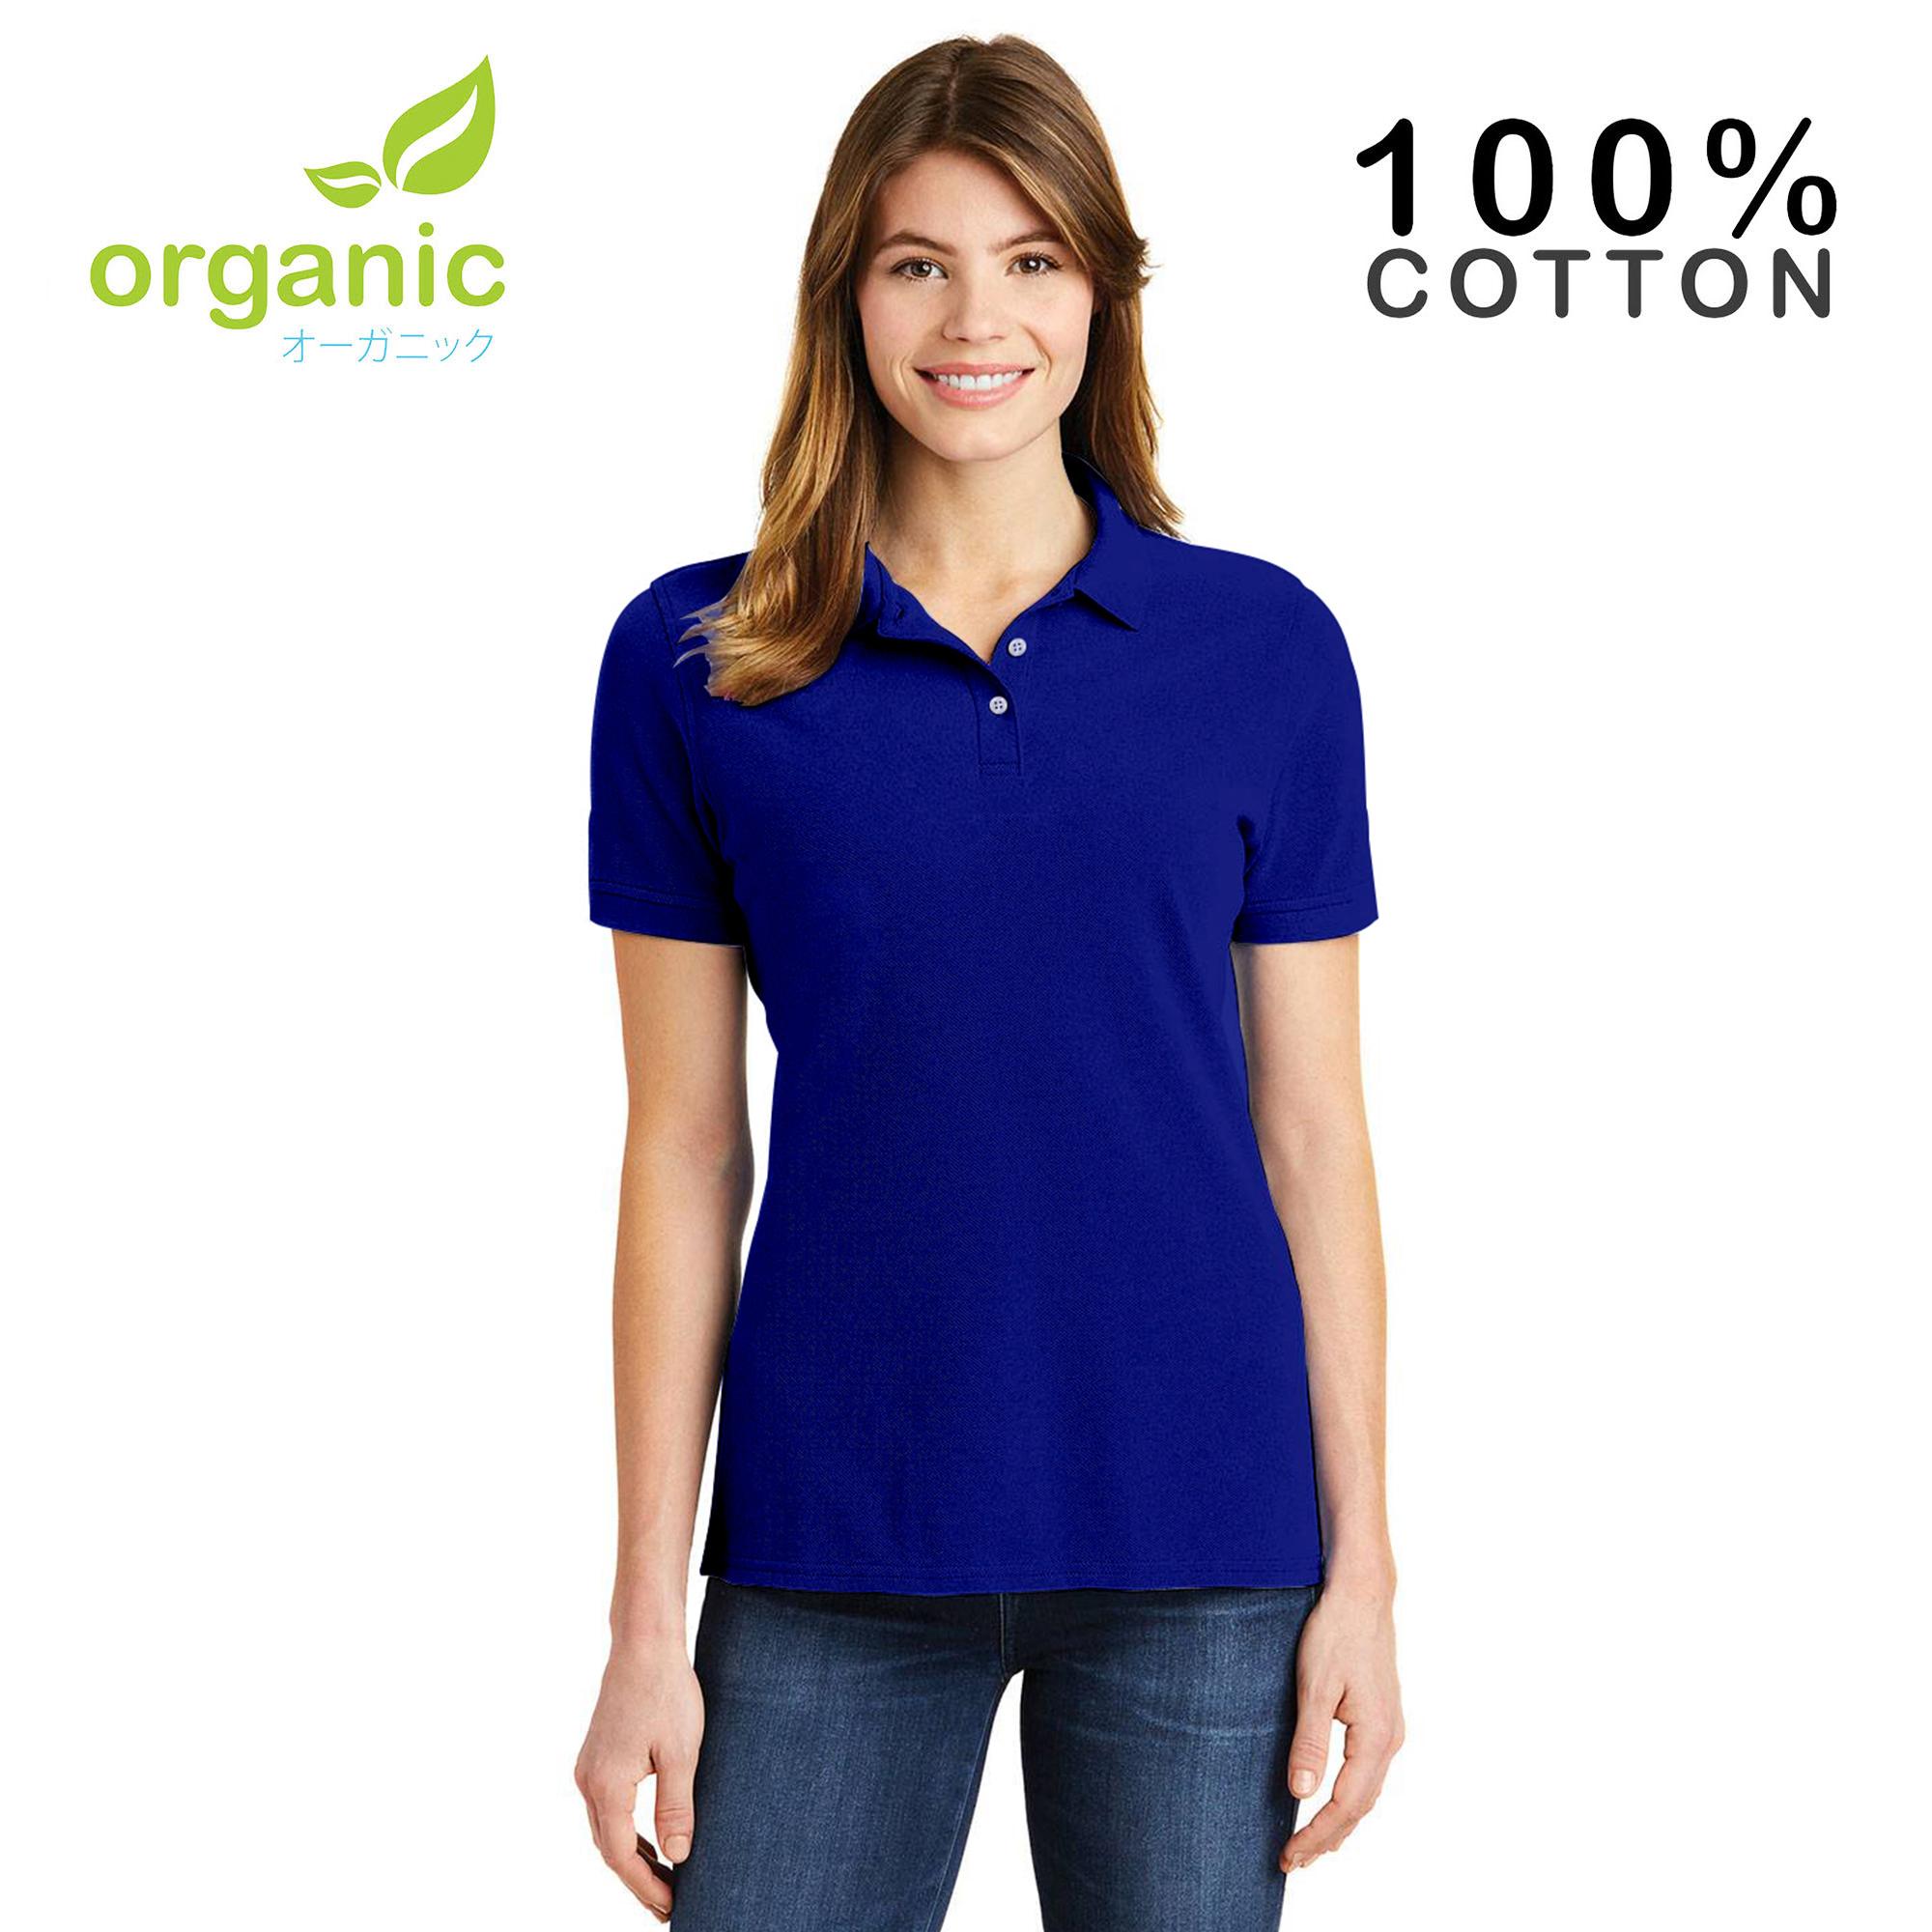 Organic Ladies Pique Polo shirt (Royal 